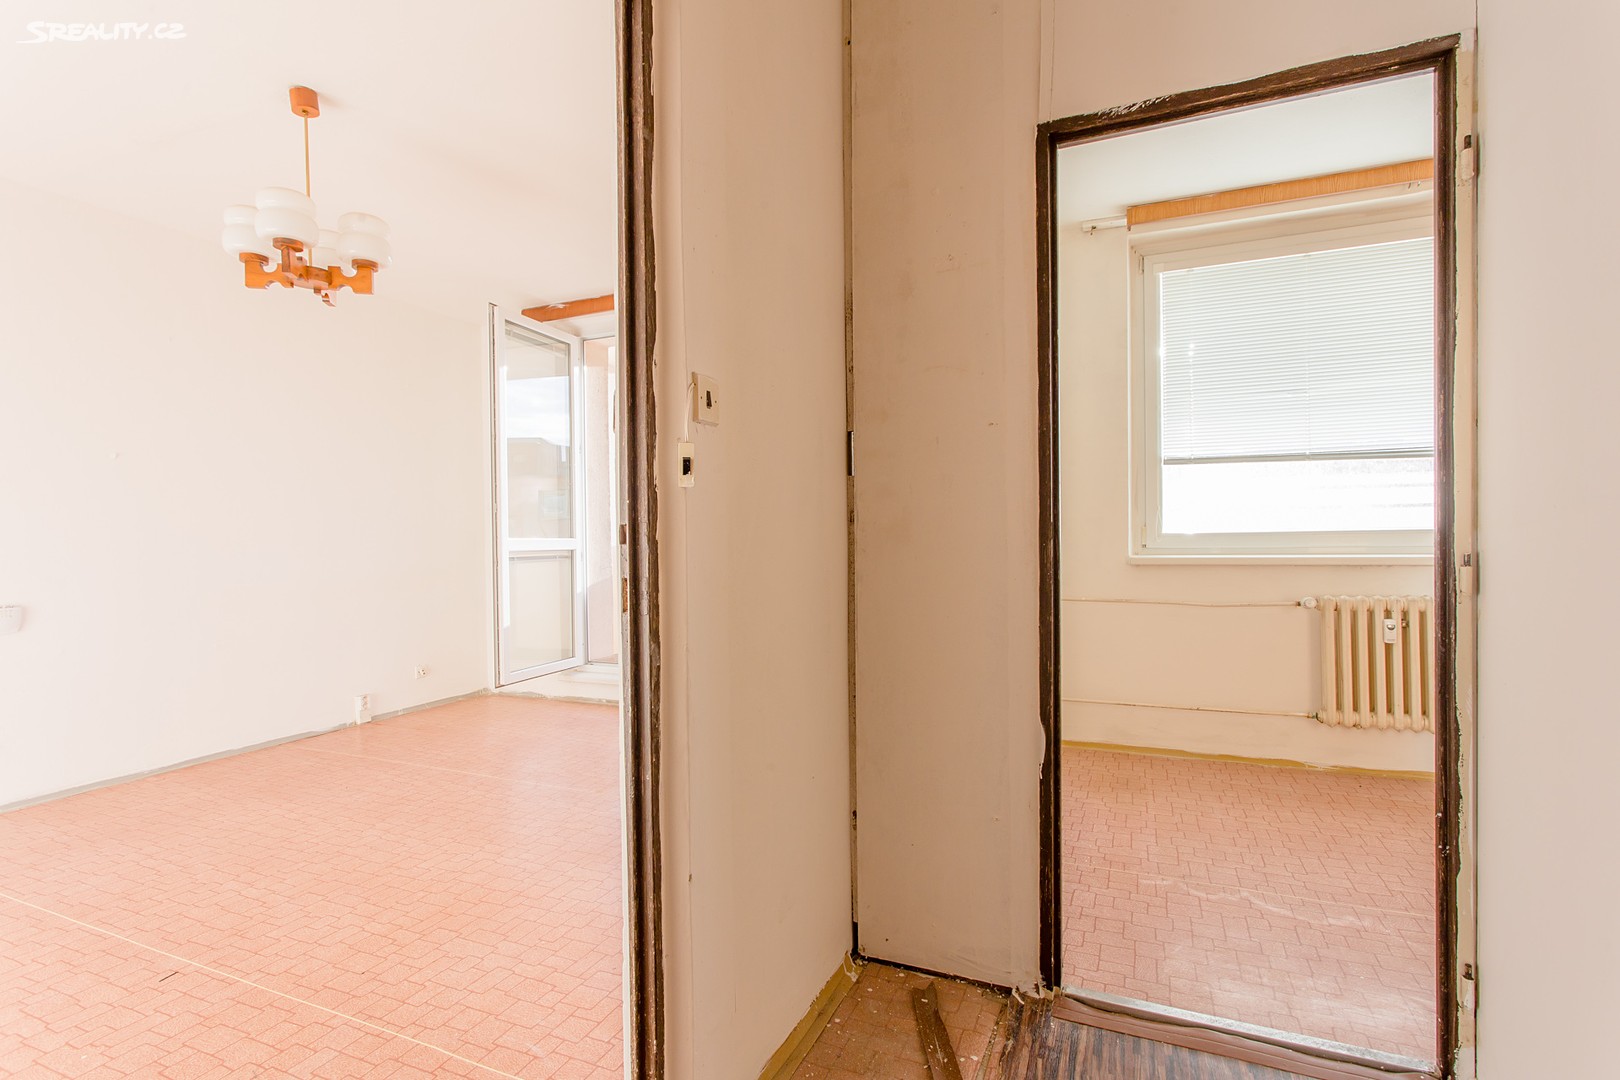 Prodej bytu 1+1 35 m², Ulička, Brno - Kohoutovice